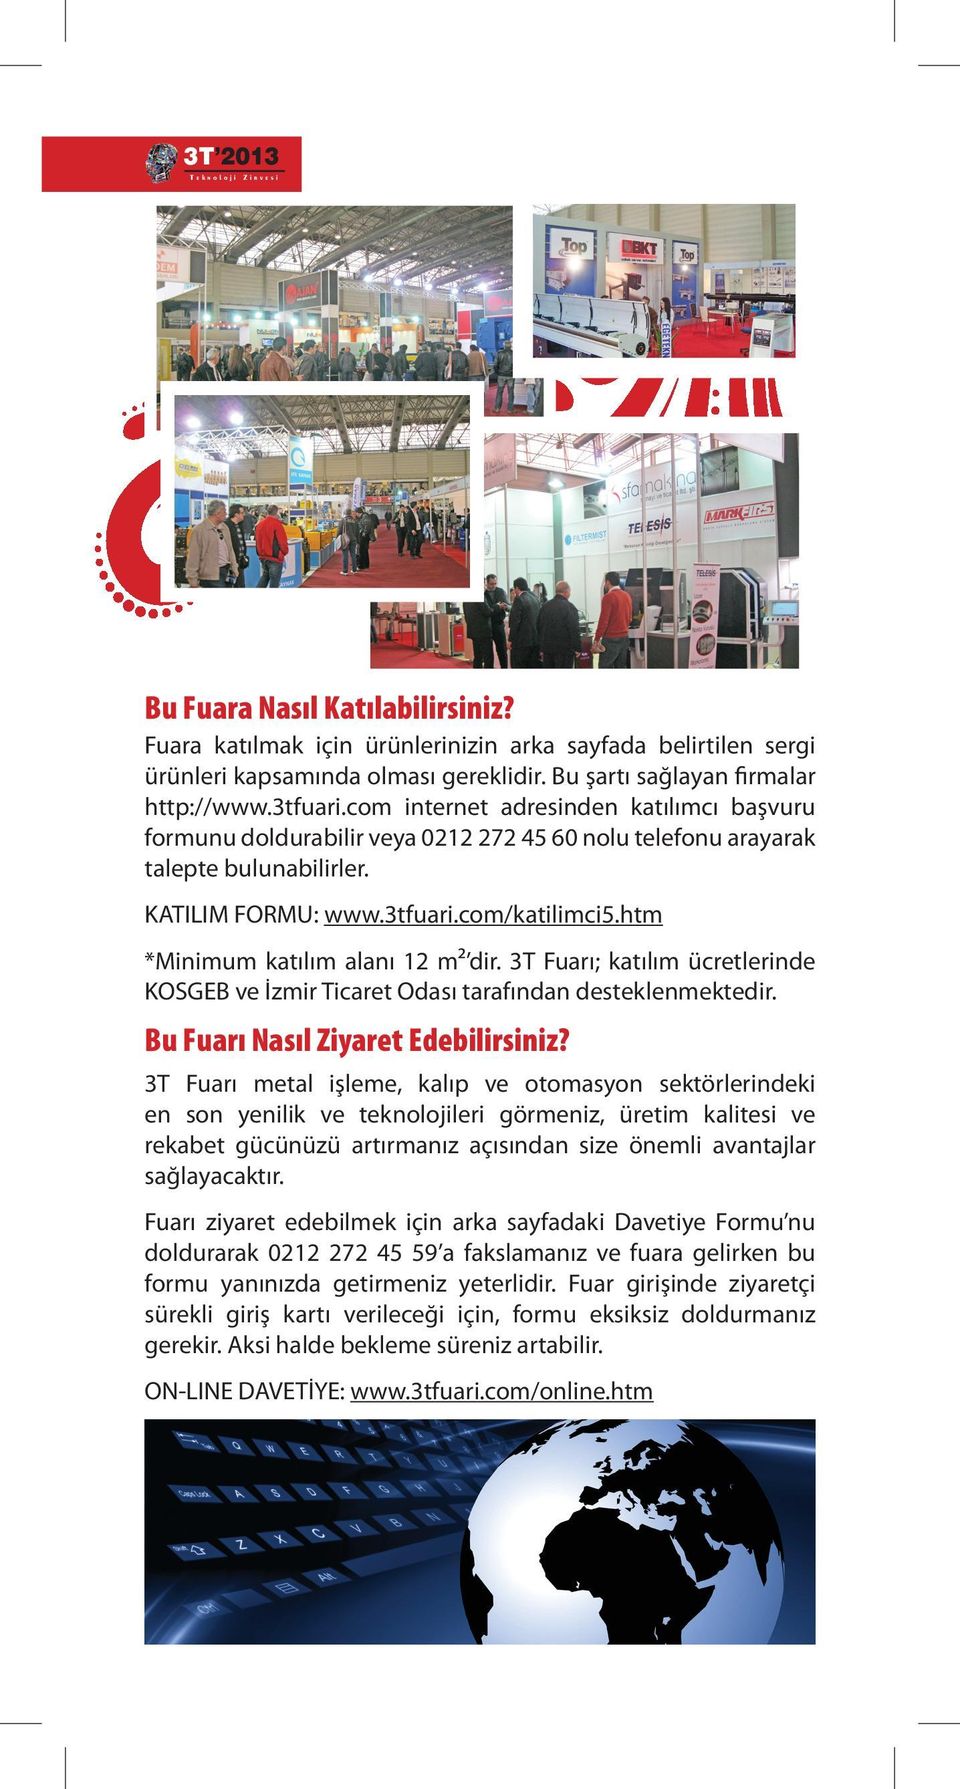 htm *Minimum katılım alanı 12 m2 dir. 3T Fuarı; katılım ücretlerinde KOSGEB ve İzmir Ticaret Odası tarafından desteklenmektedir. Bu Fuarı Nasıl Ziyaret Edebilirsiniz?